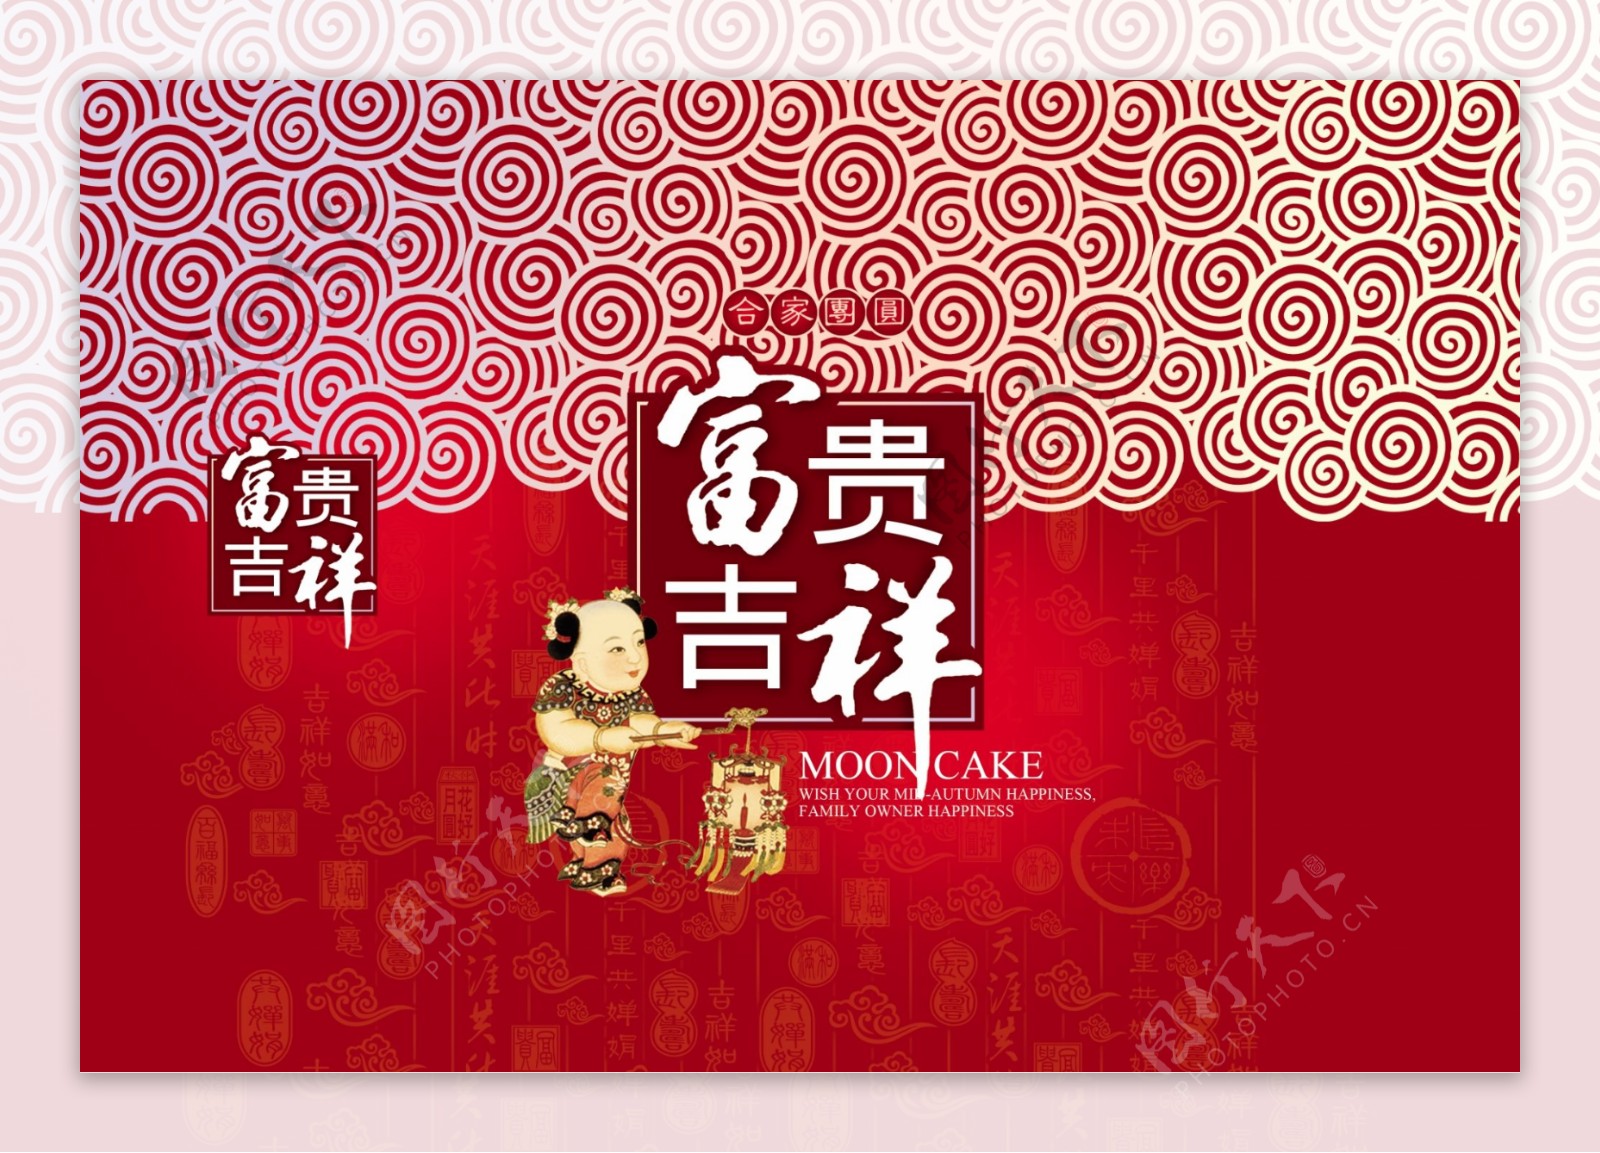 奥运月饼中国纹火炬纹富贵吉祥传统包装设计礼品包装图片